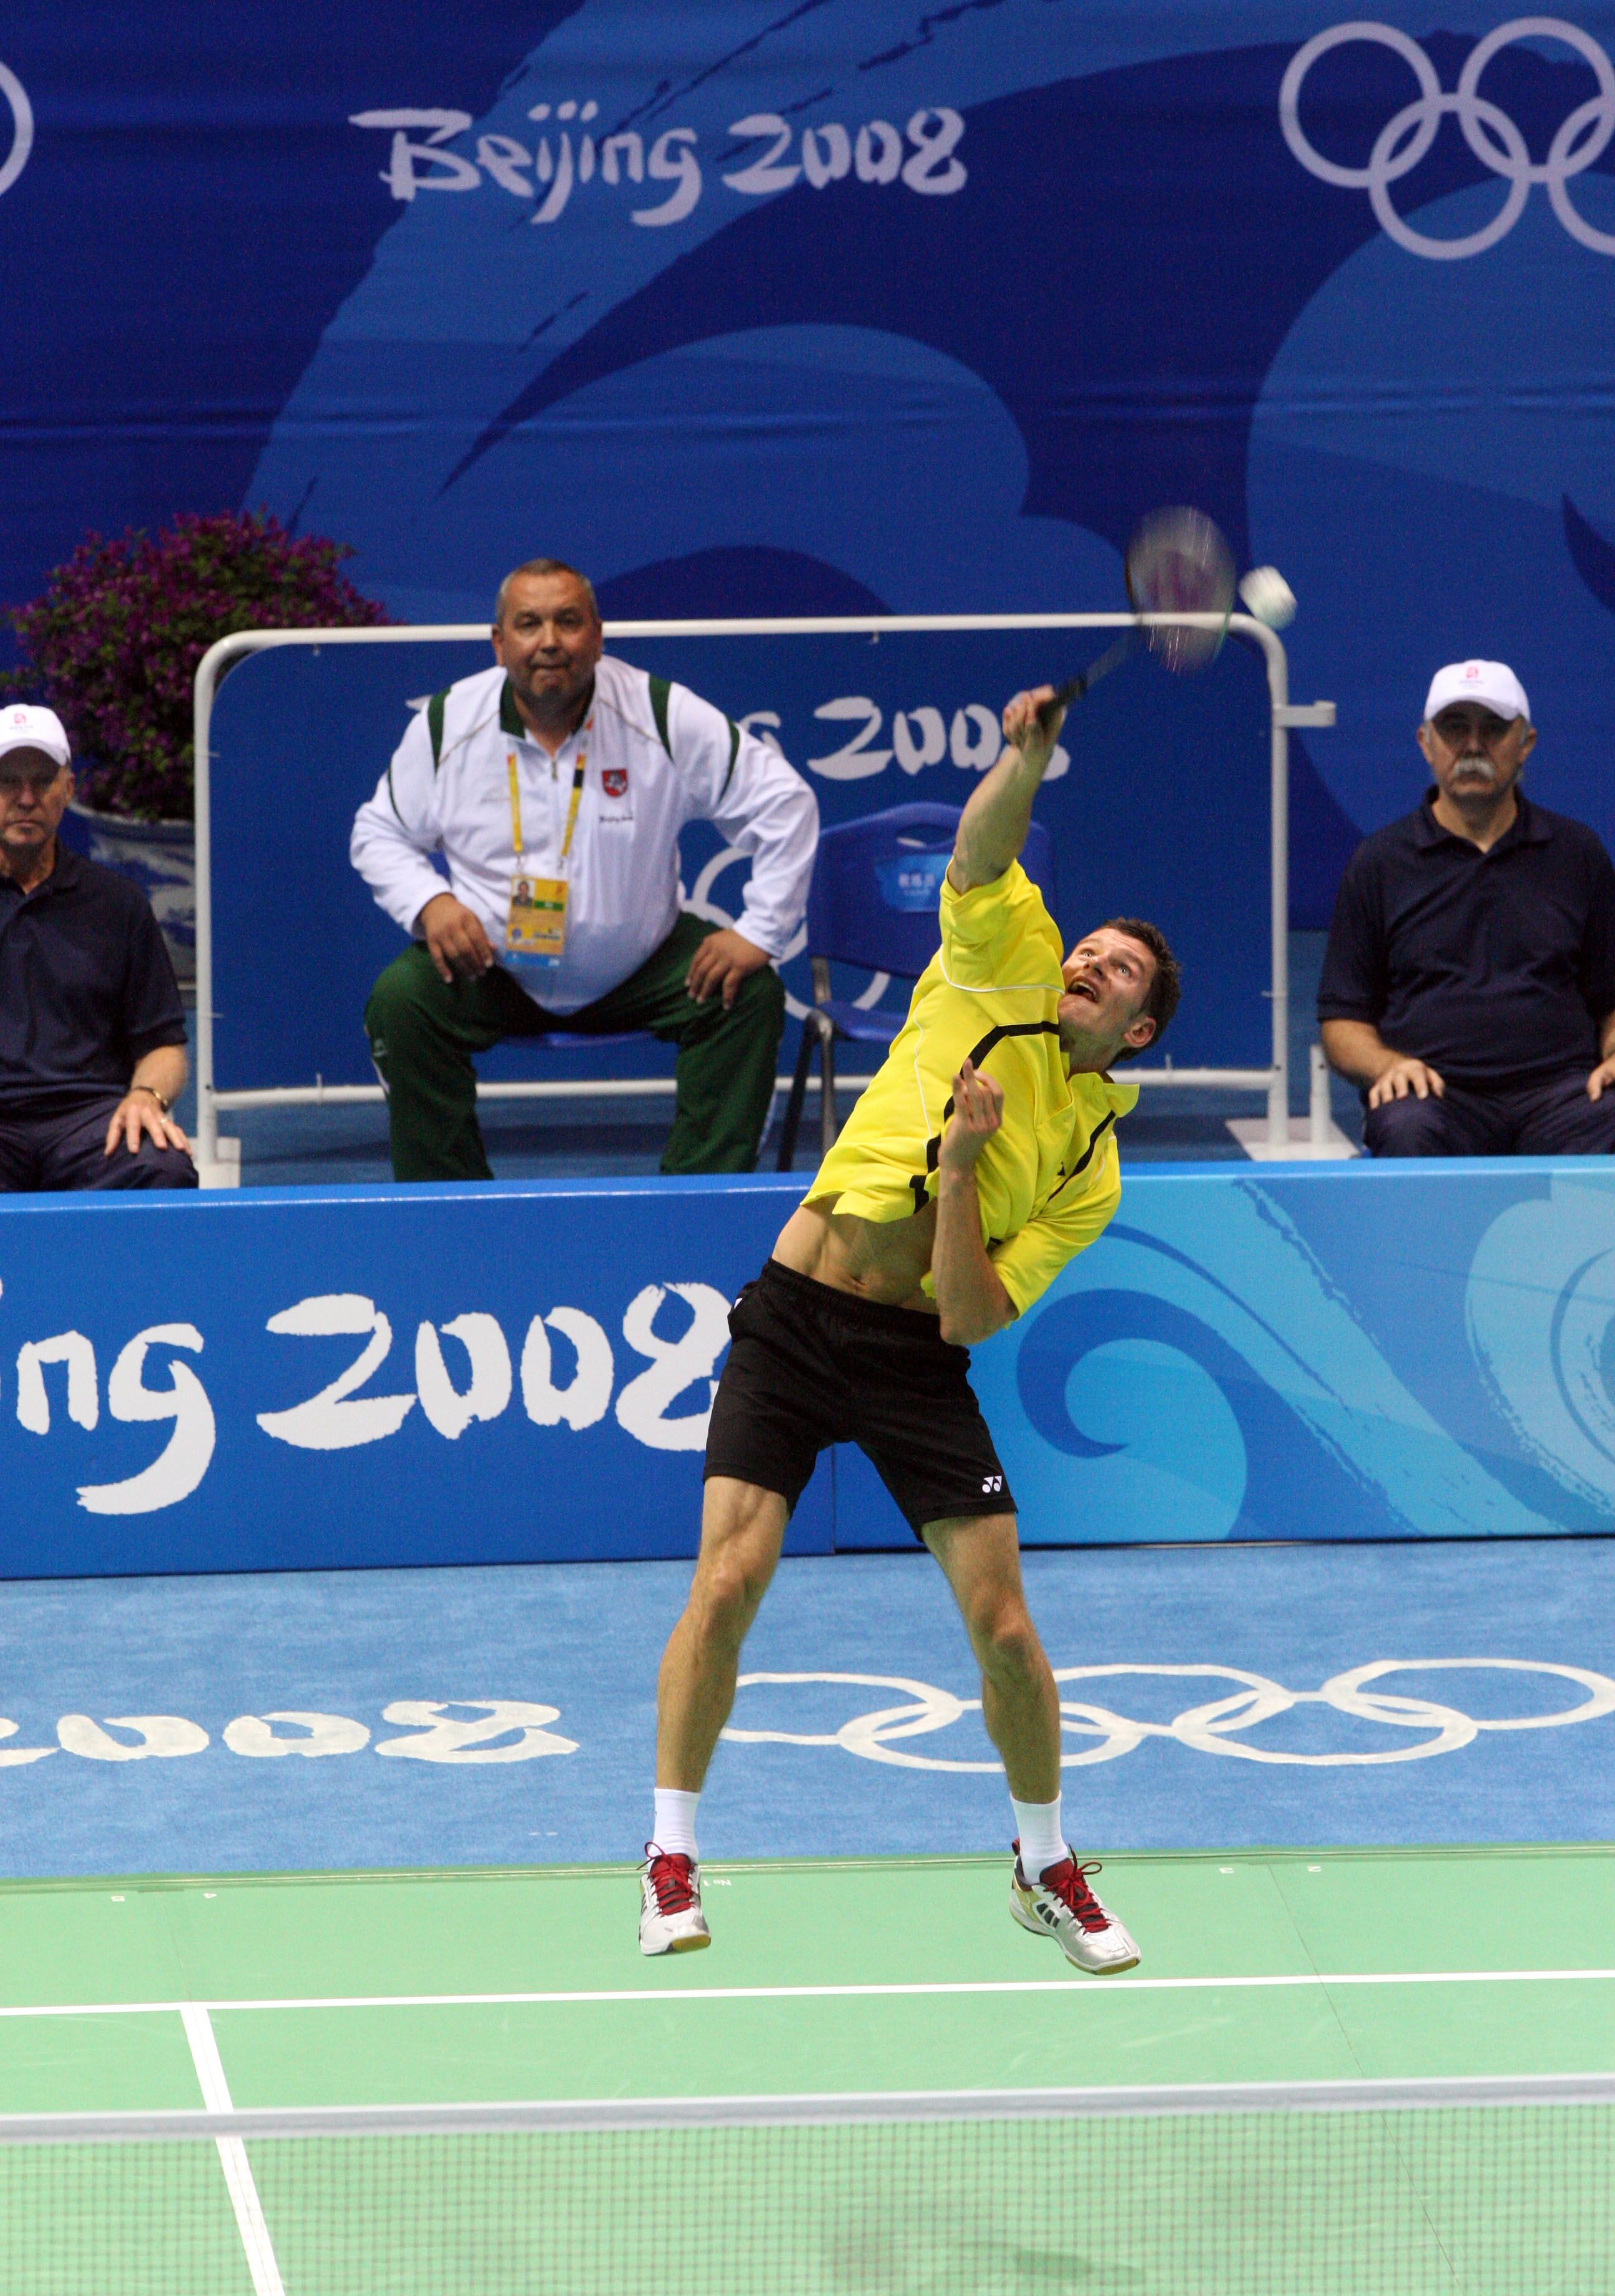 Olimpinėse žaidynėse žaidė du Lietuvos badmintonininkai: A.Stapušaitytė ir K.Navickas/Alfredo Pliadžio nuotr.
